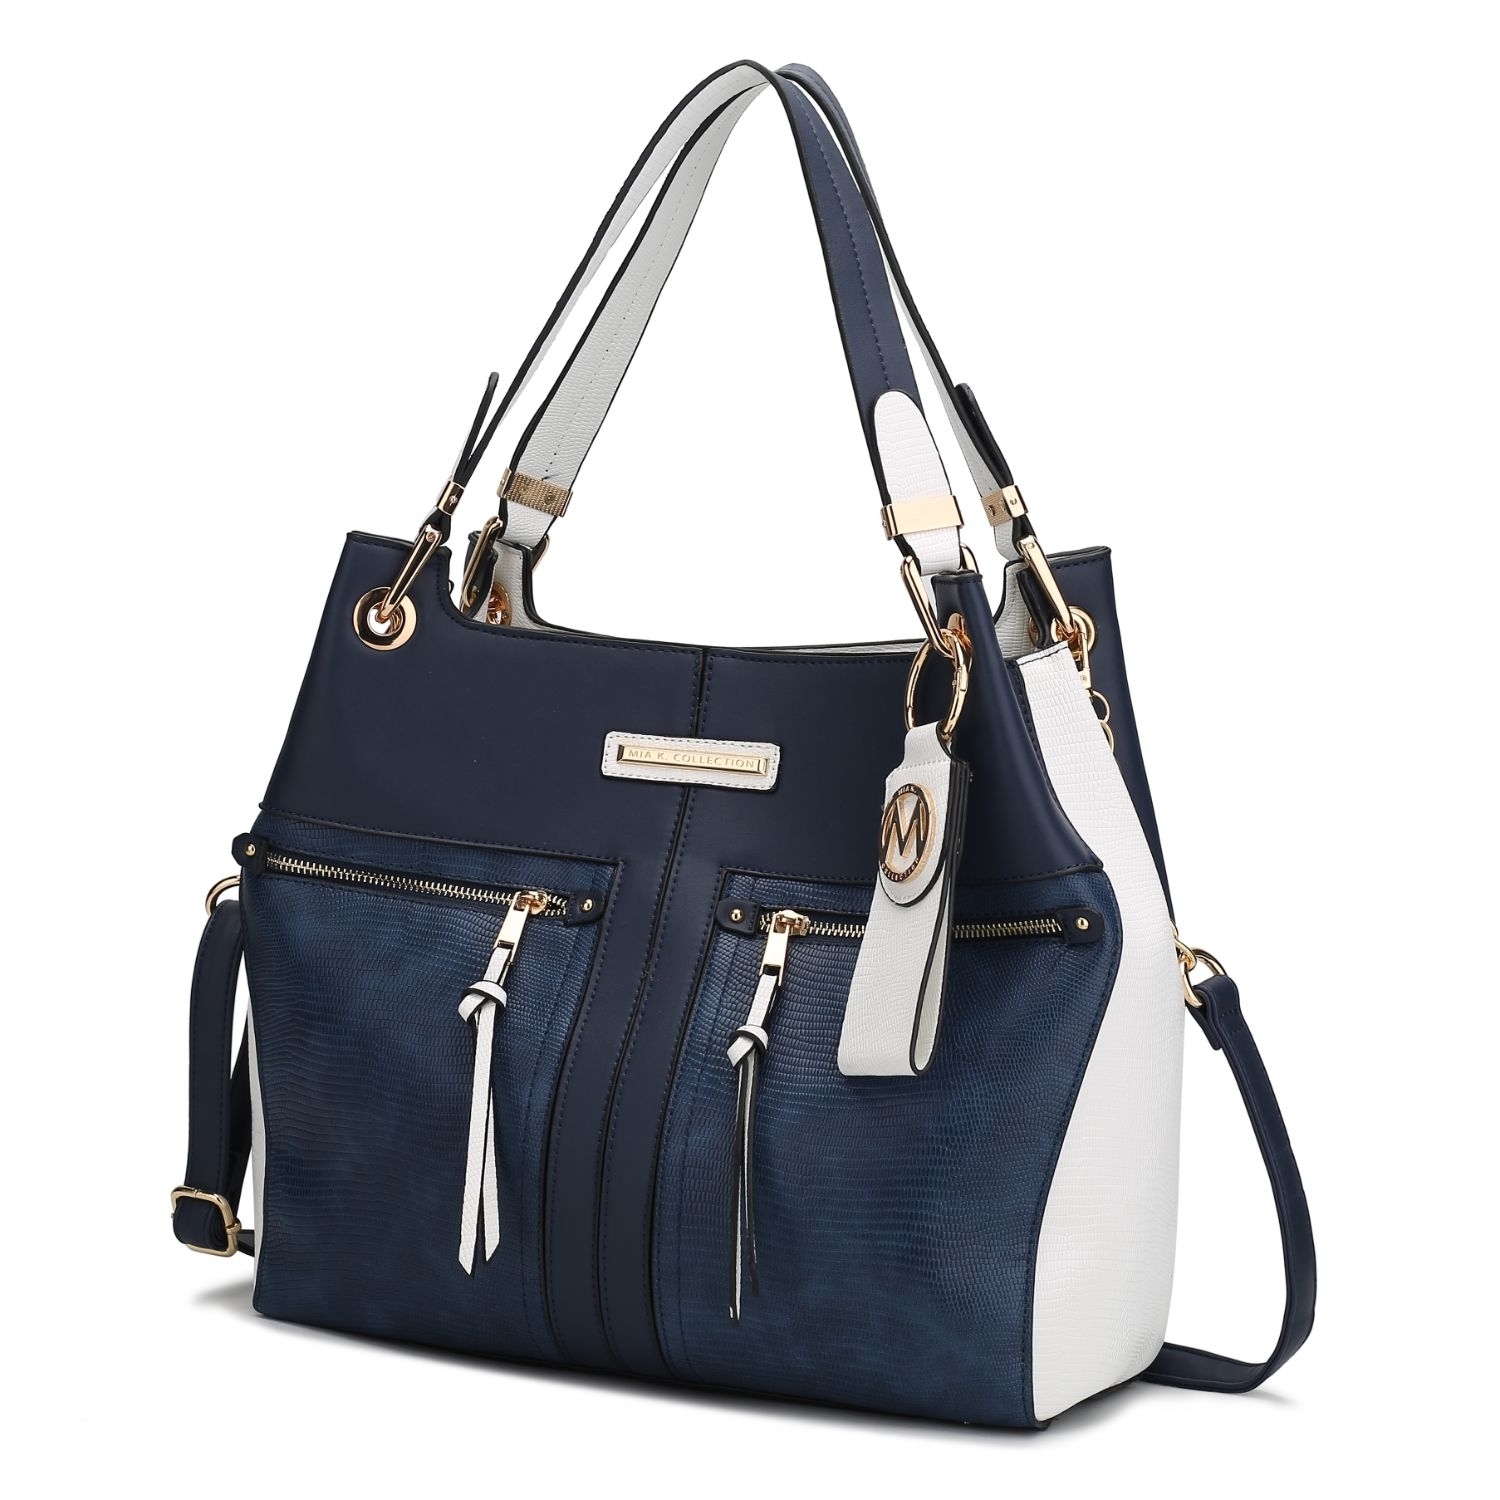 MKF Collection Sofia Tote 2 Pcs Handbag With Keyring By Mia K. - Navy